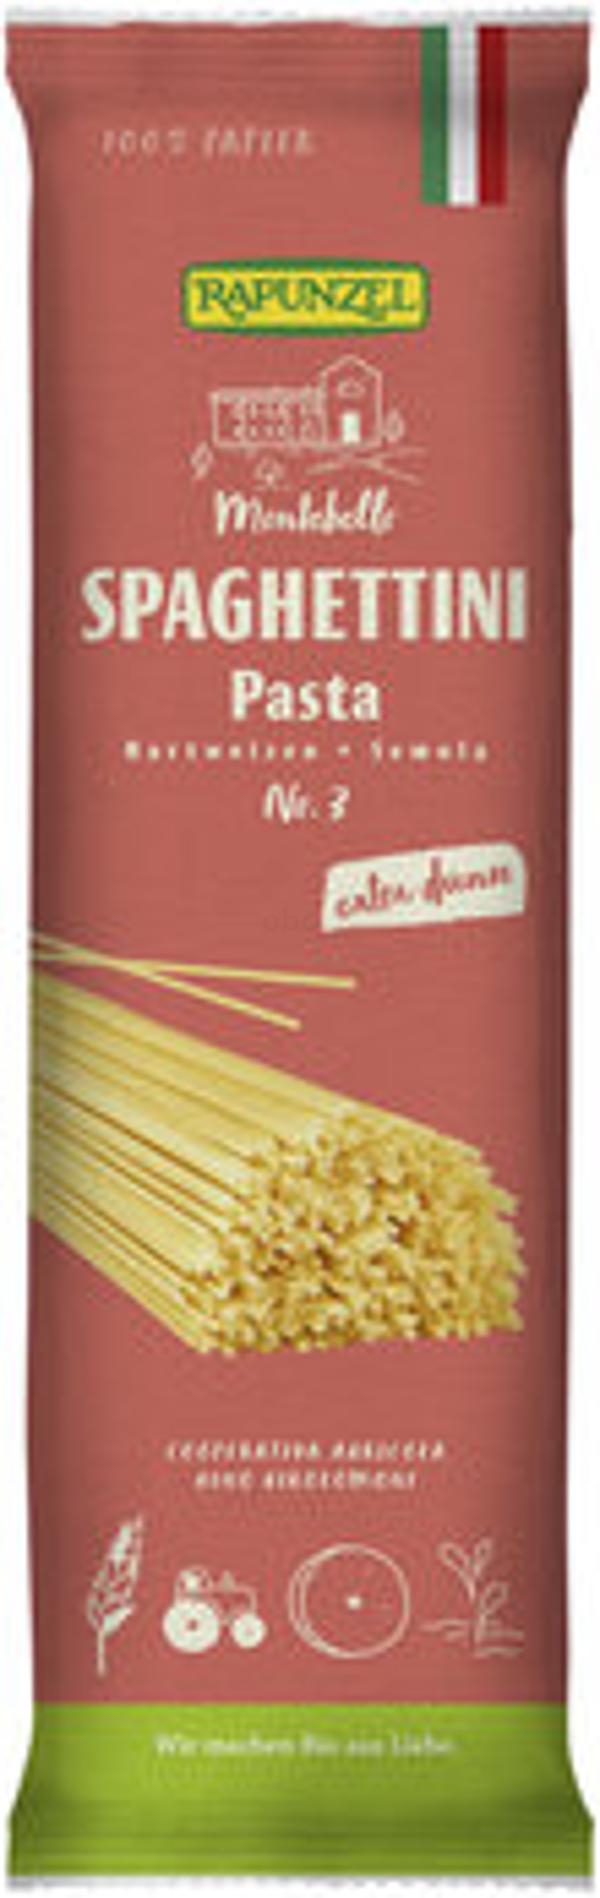 Produktfoto zu Spaghettini Semola, 500 g